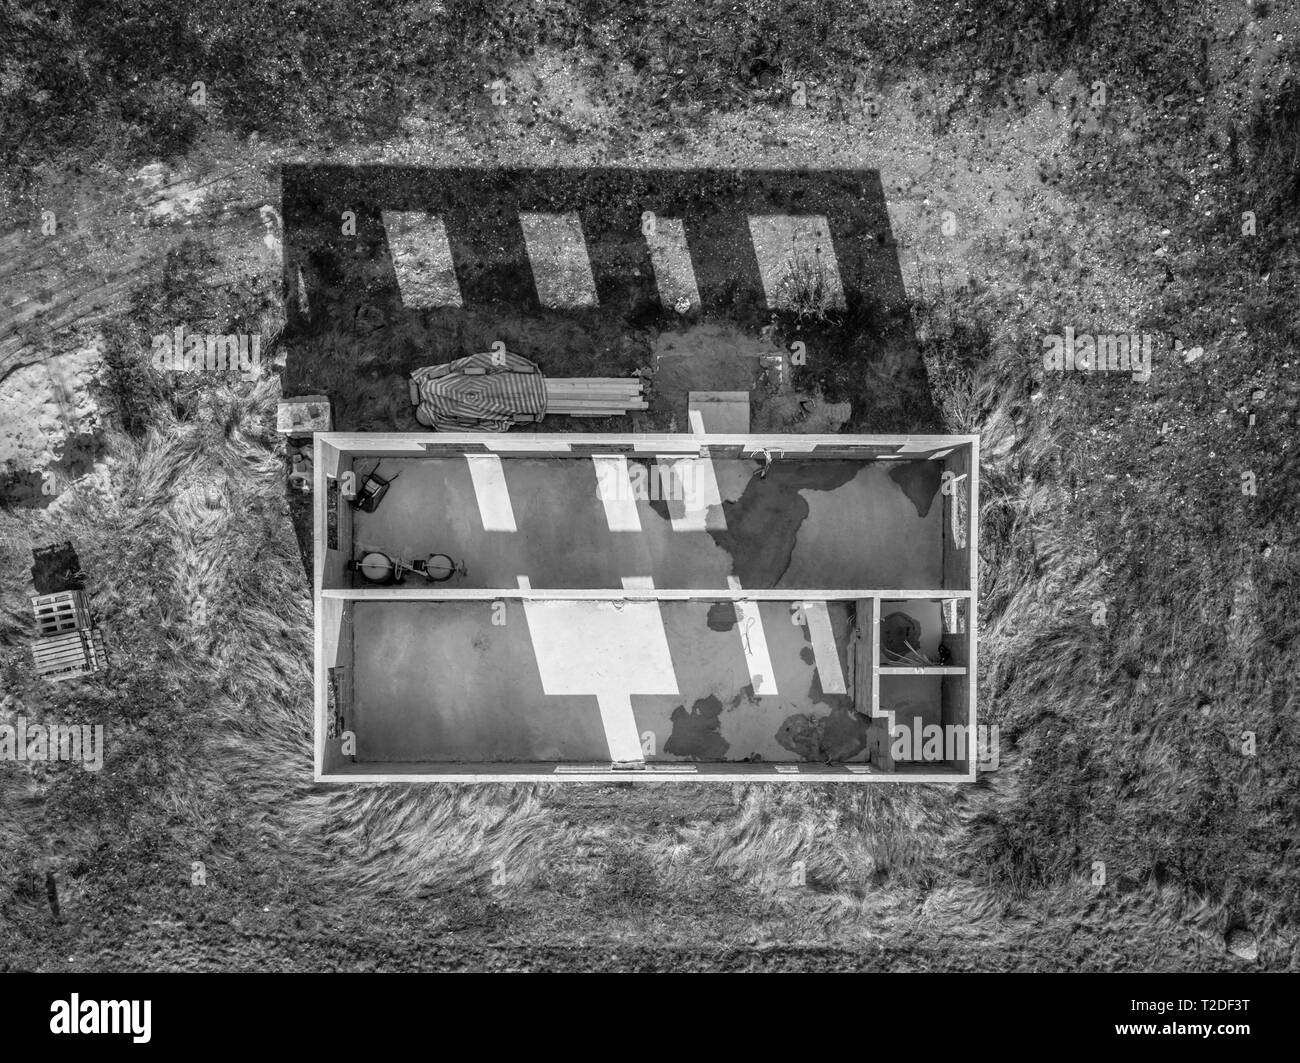 Cuadro, la estructura del edificio, la vista aérea de un edificio, dronephoto, blanco y negro, B/W, aerophoto, vista vertical desde una gran altura de un edificio Foto de stock